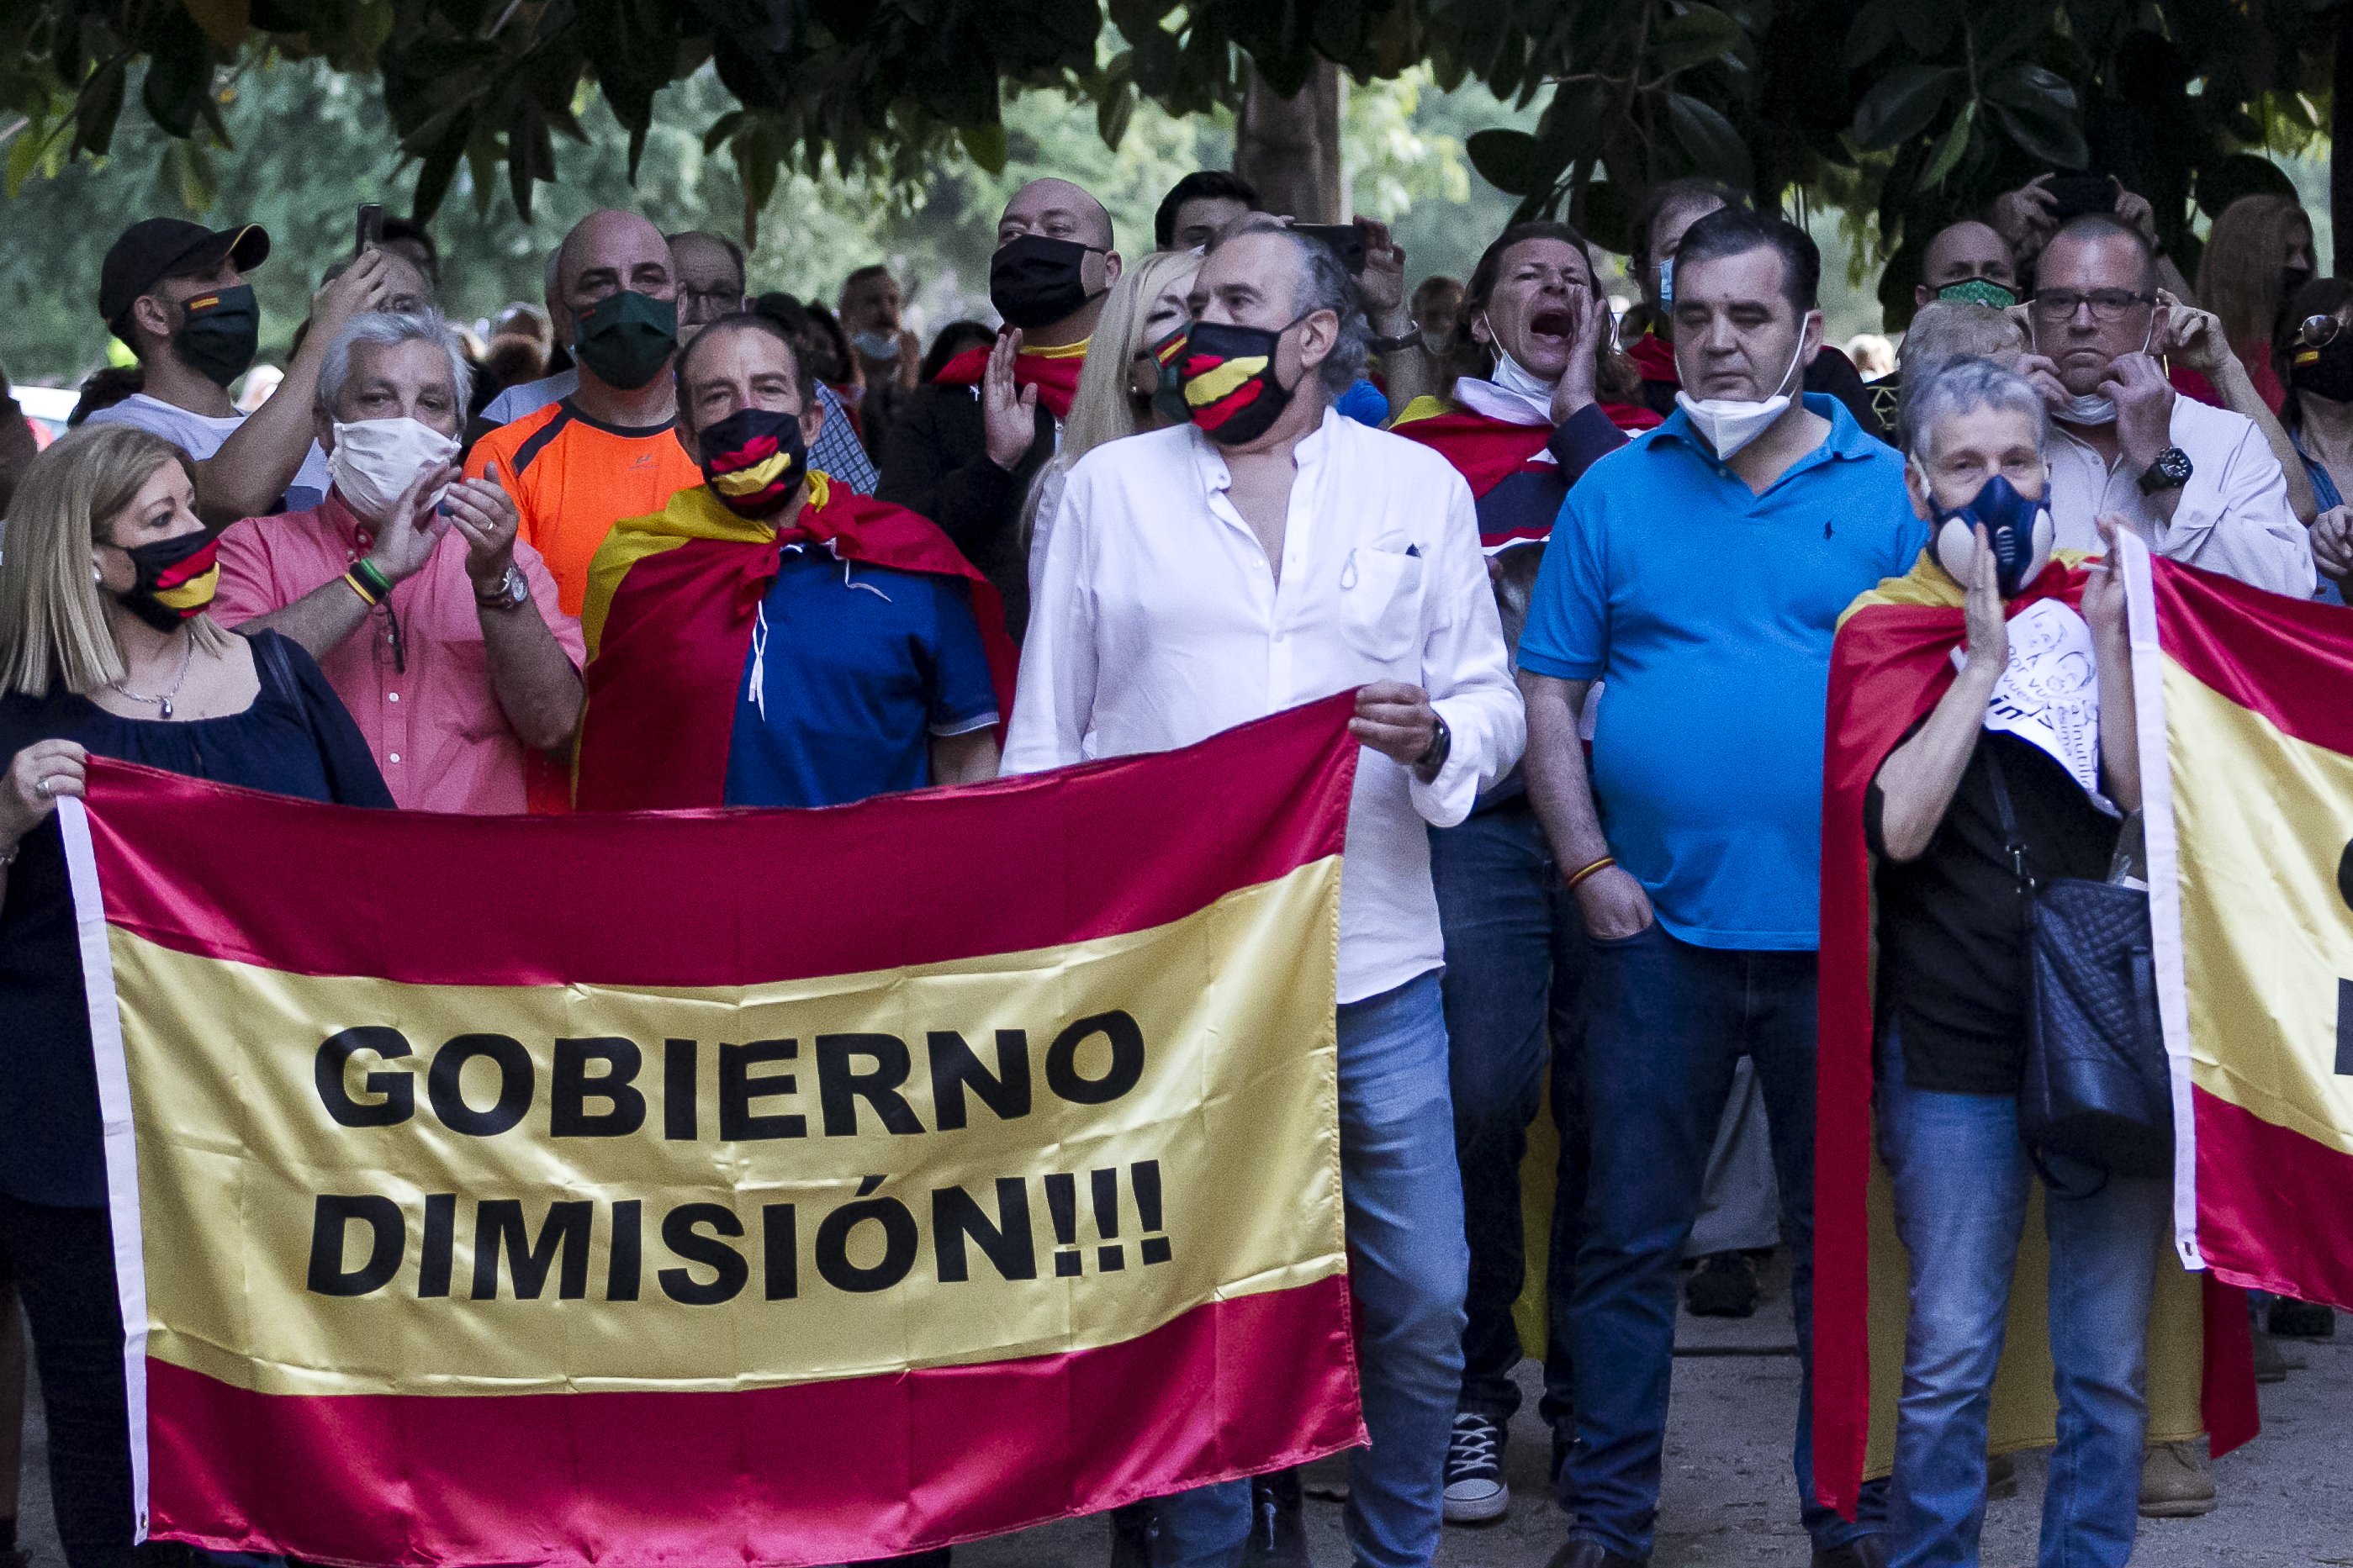 Indignación de una periodista de Telecinco en una manifestación de 'coronapijos'